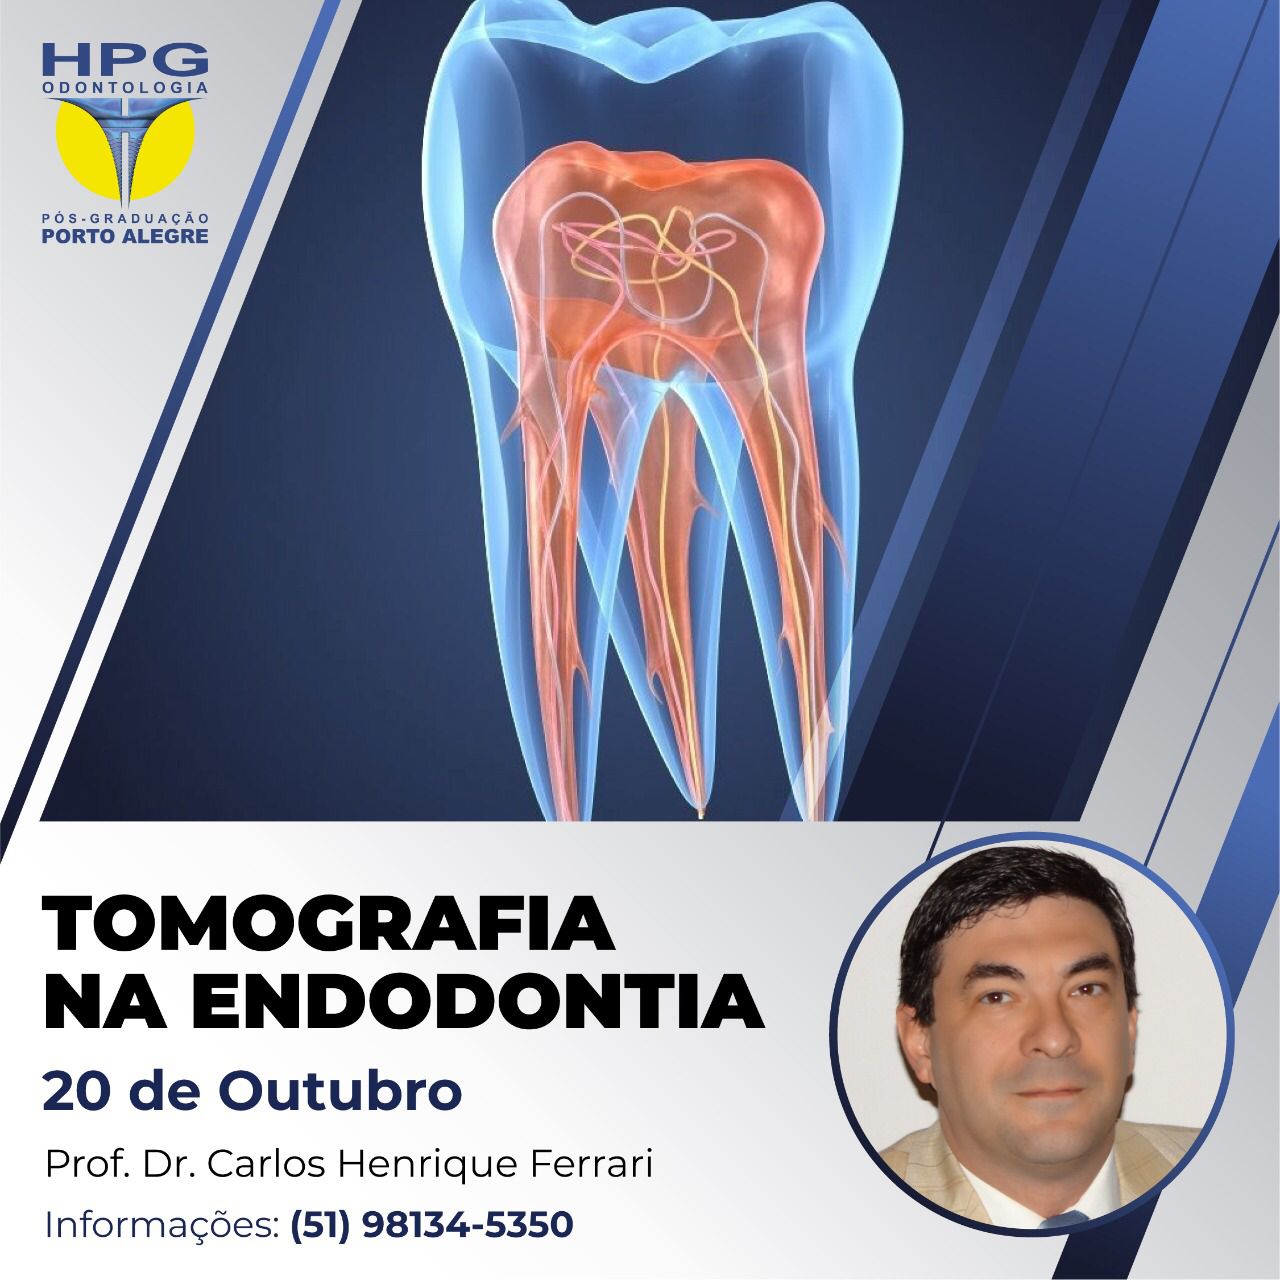 Actualmente estás viendo Tomografía Cone Beam en Endodoncia en Porto Alegre.